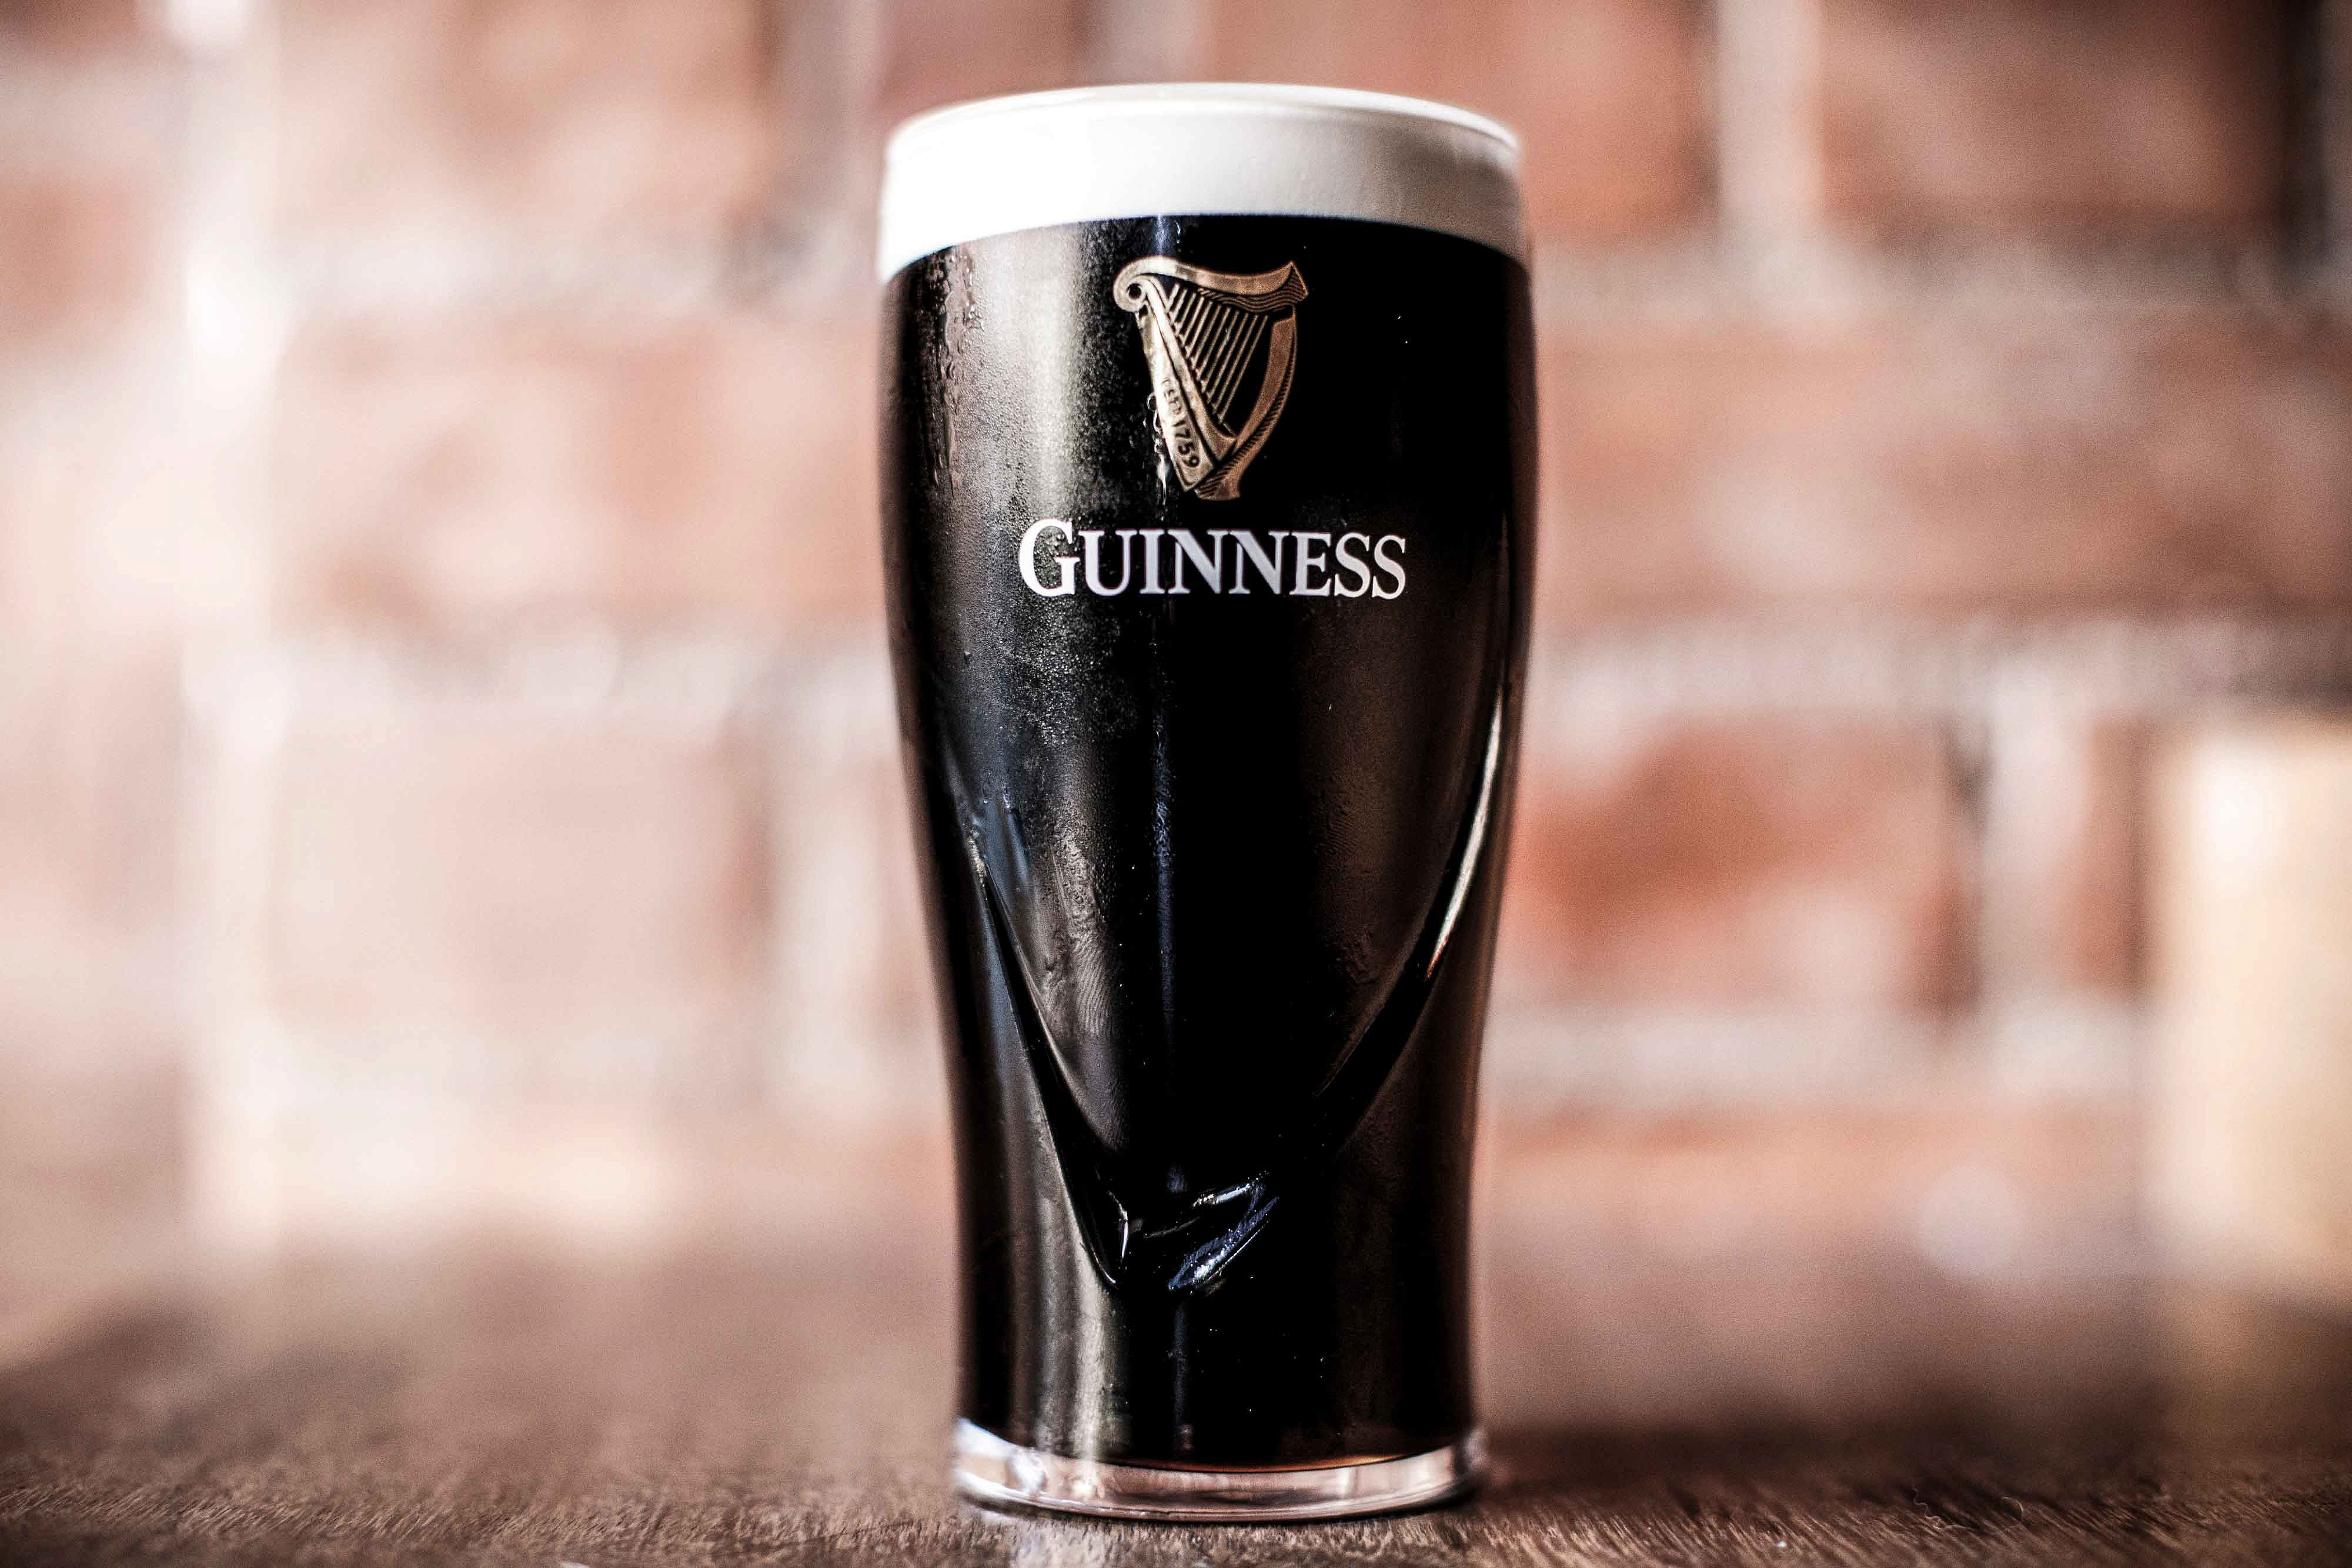      "Guinness"